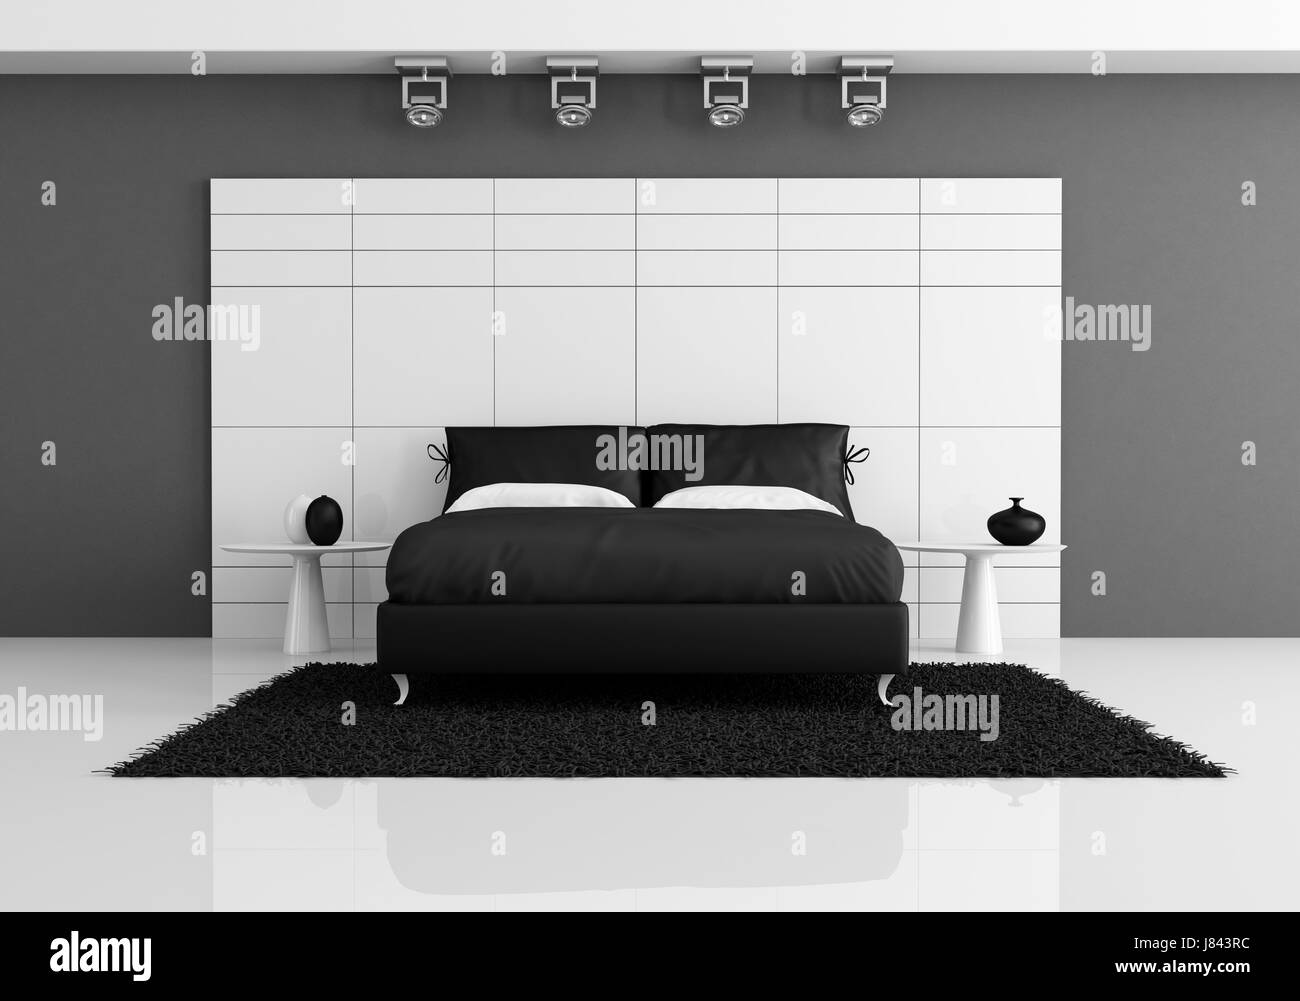 Lit mobilier intérieur jetblack basané noir deep black chambres d'une  épaisseur de Photo Stock - Alamy